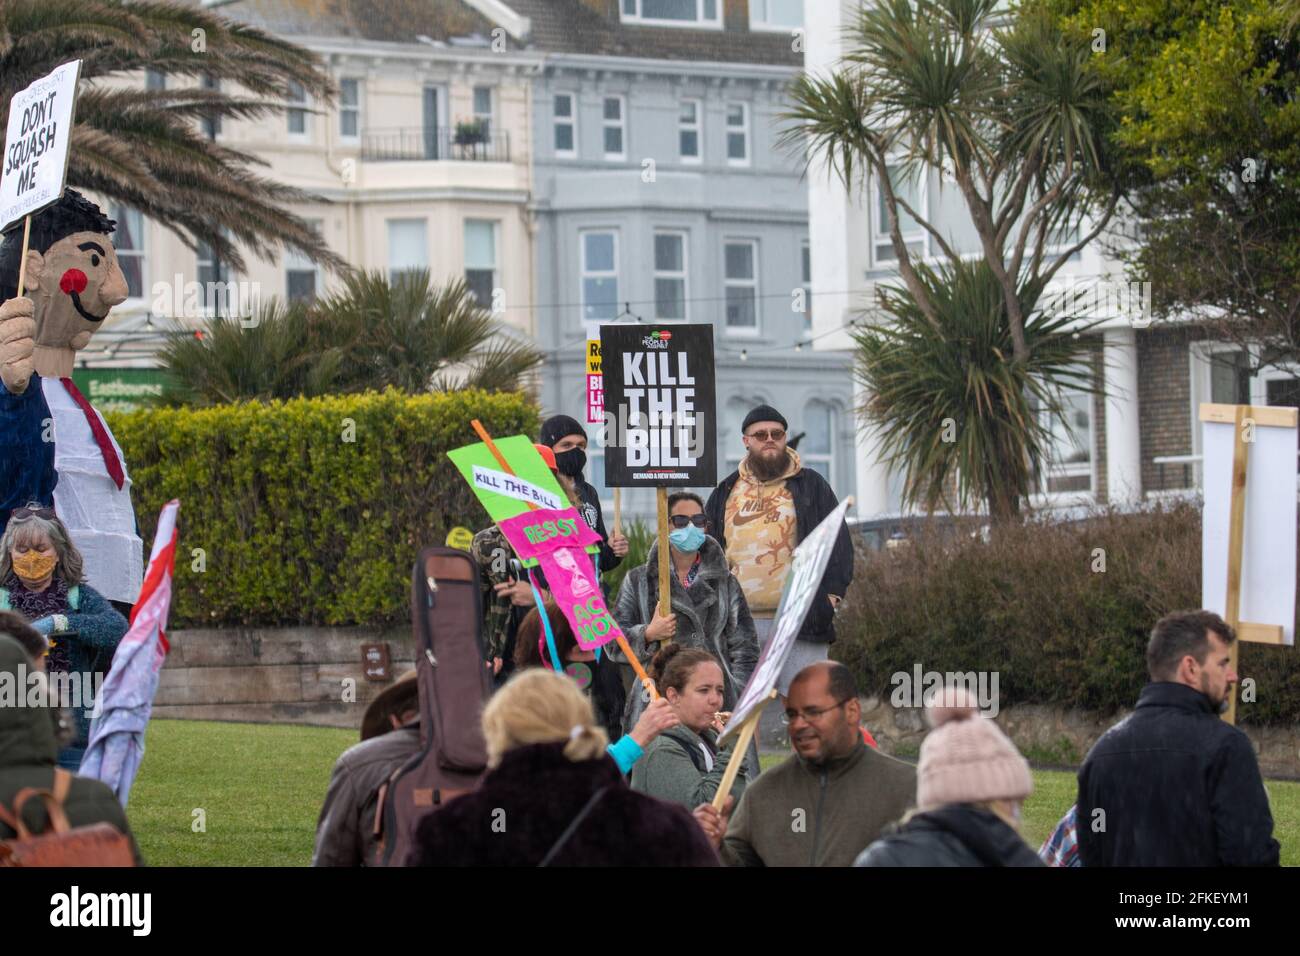 Eastbourne, Großbritannien. Mai 2021. Eine Gruppe von etwa 80 Demonstranten marschierte heute entlang der Eastbourne Seafront zur Unterstützung von Kill the Bill, XR und BLM, eine kleine Polizei war für diese friedliche Demonstration anwesend. Quelle: Pete Abel/Alamy Live News Stockfoto